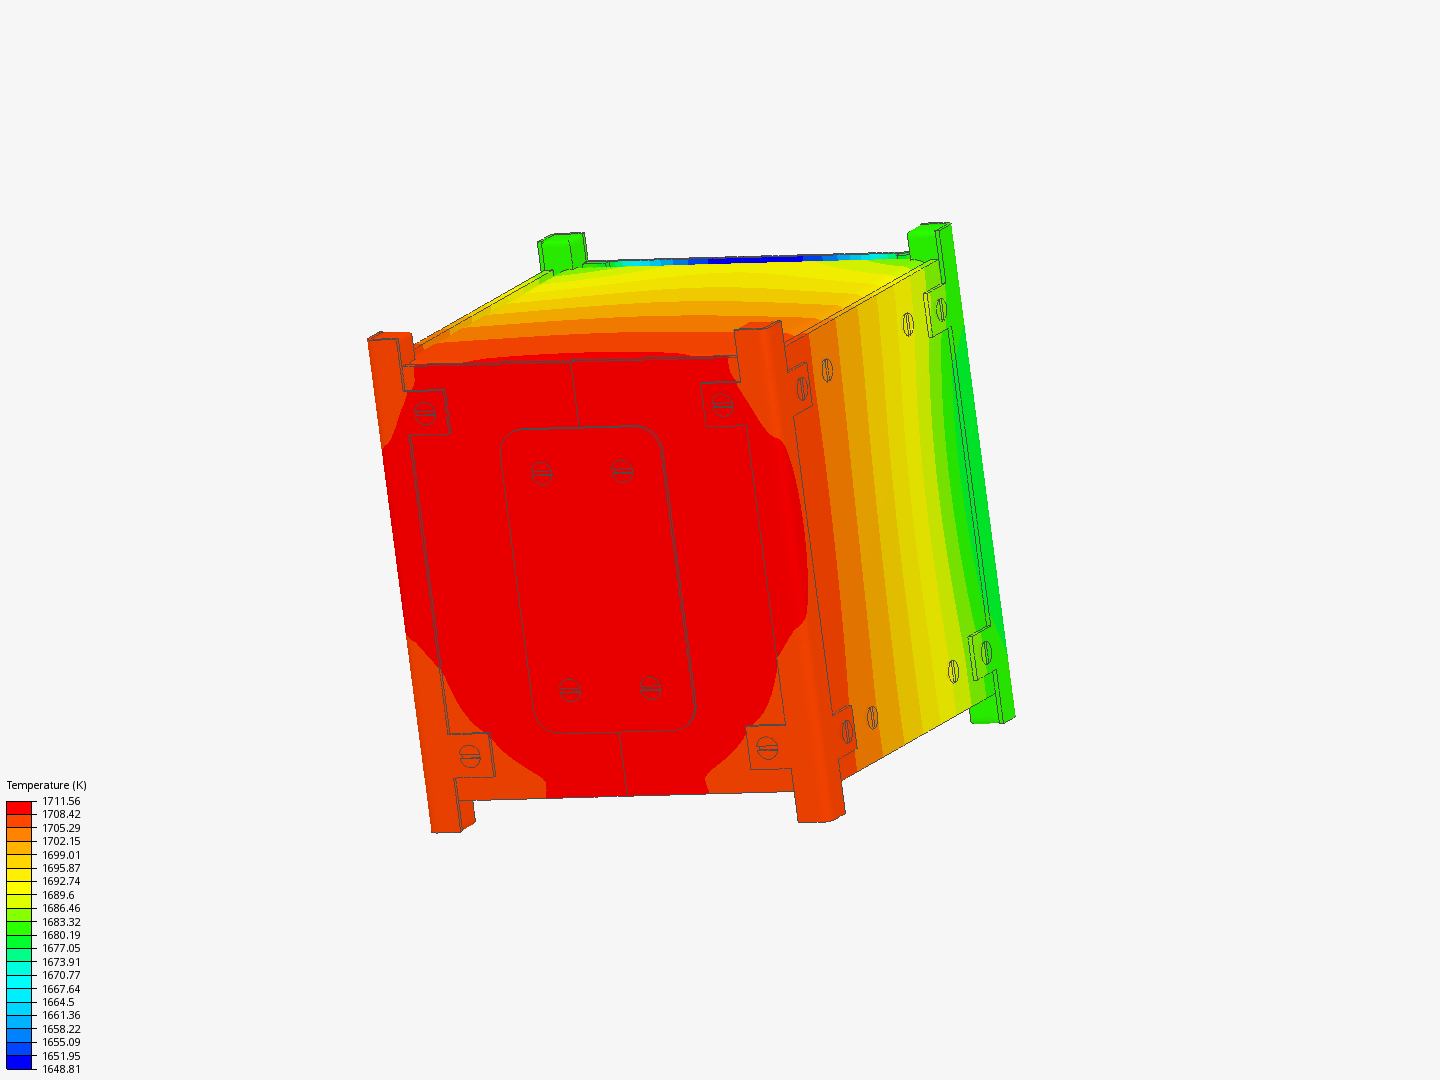 Thermal Analysis of 2u CubeSat image